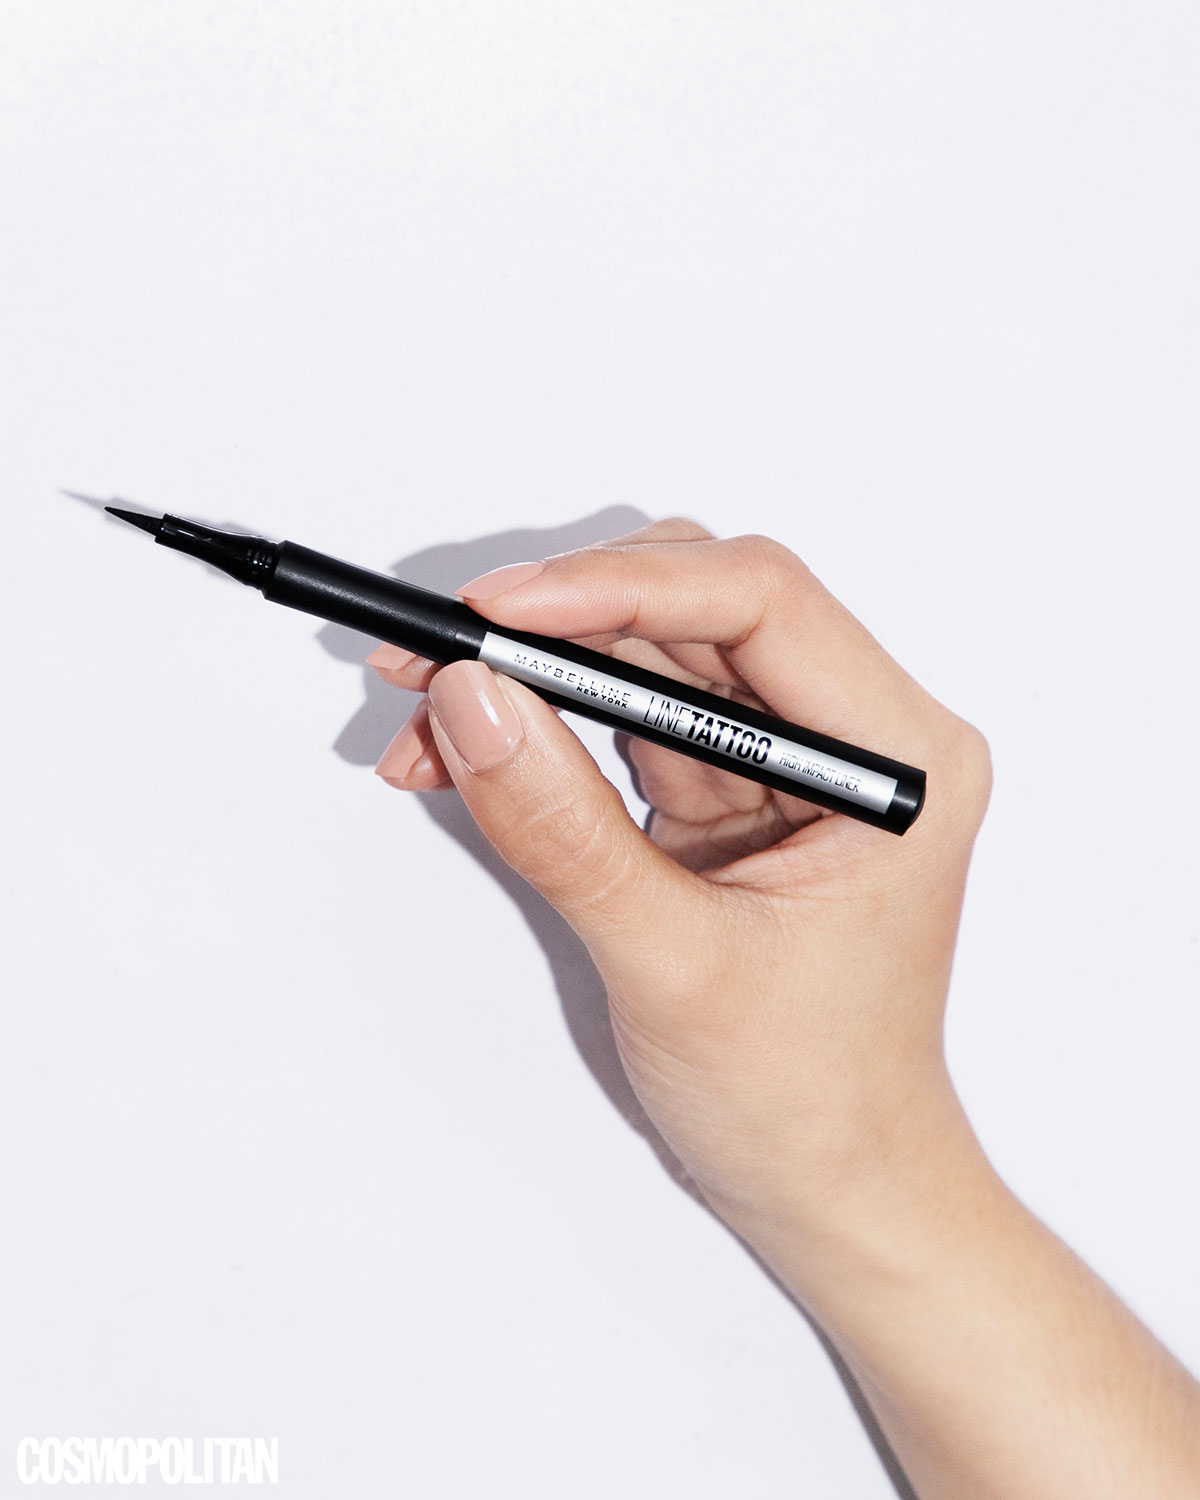 Professional Eyeliner -Sketch Pen Eyeliner - Waterproof Sketch Pen Eyeliner  - Professional Waterproof Modern Twist Sketch Pen Eyeliner